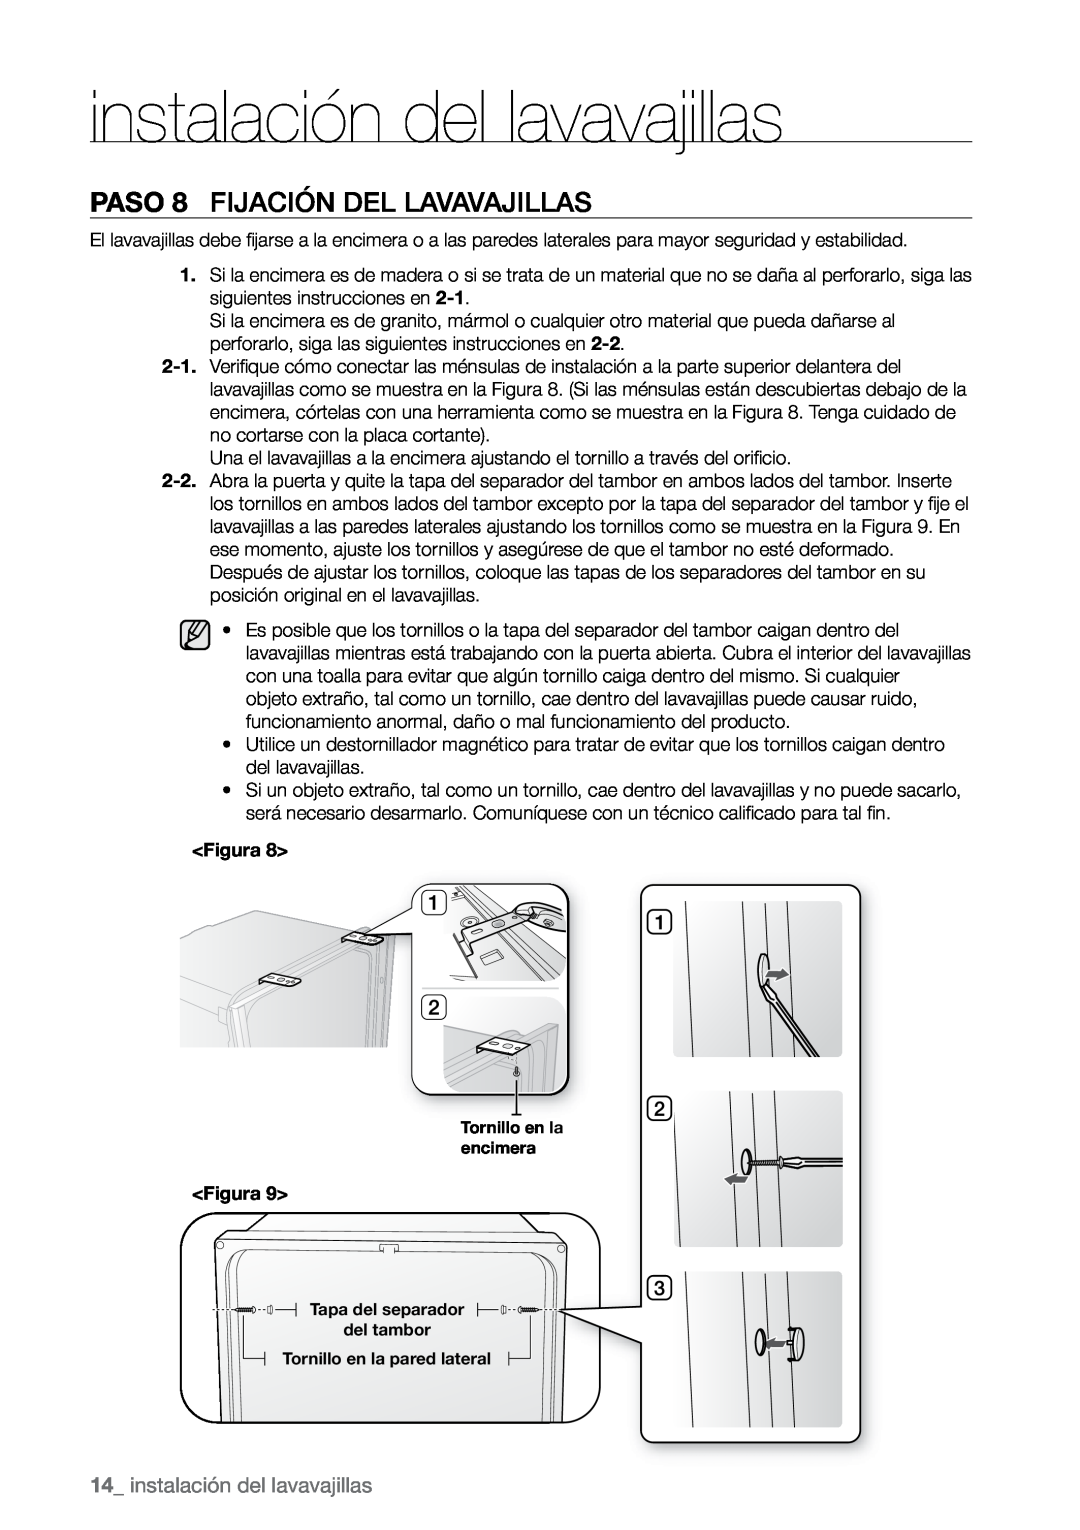 Samsung DMR77, DMR78, DMR57 manual PASO 8 Fijación del lavavajillas, instalación del lavavajillas 